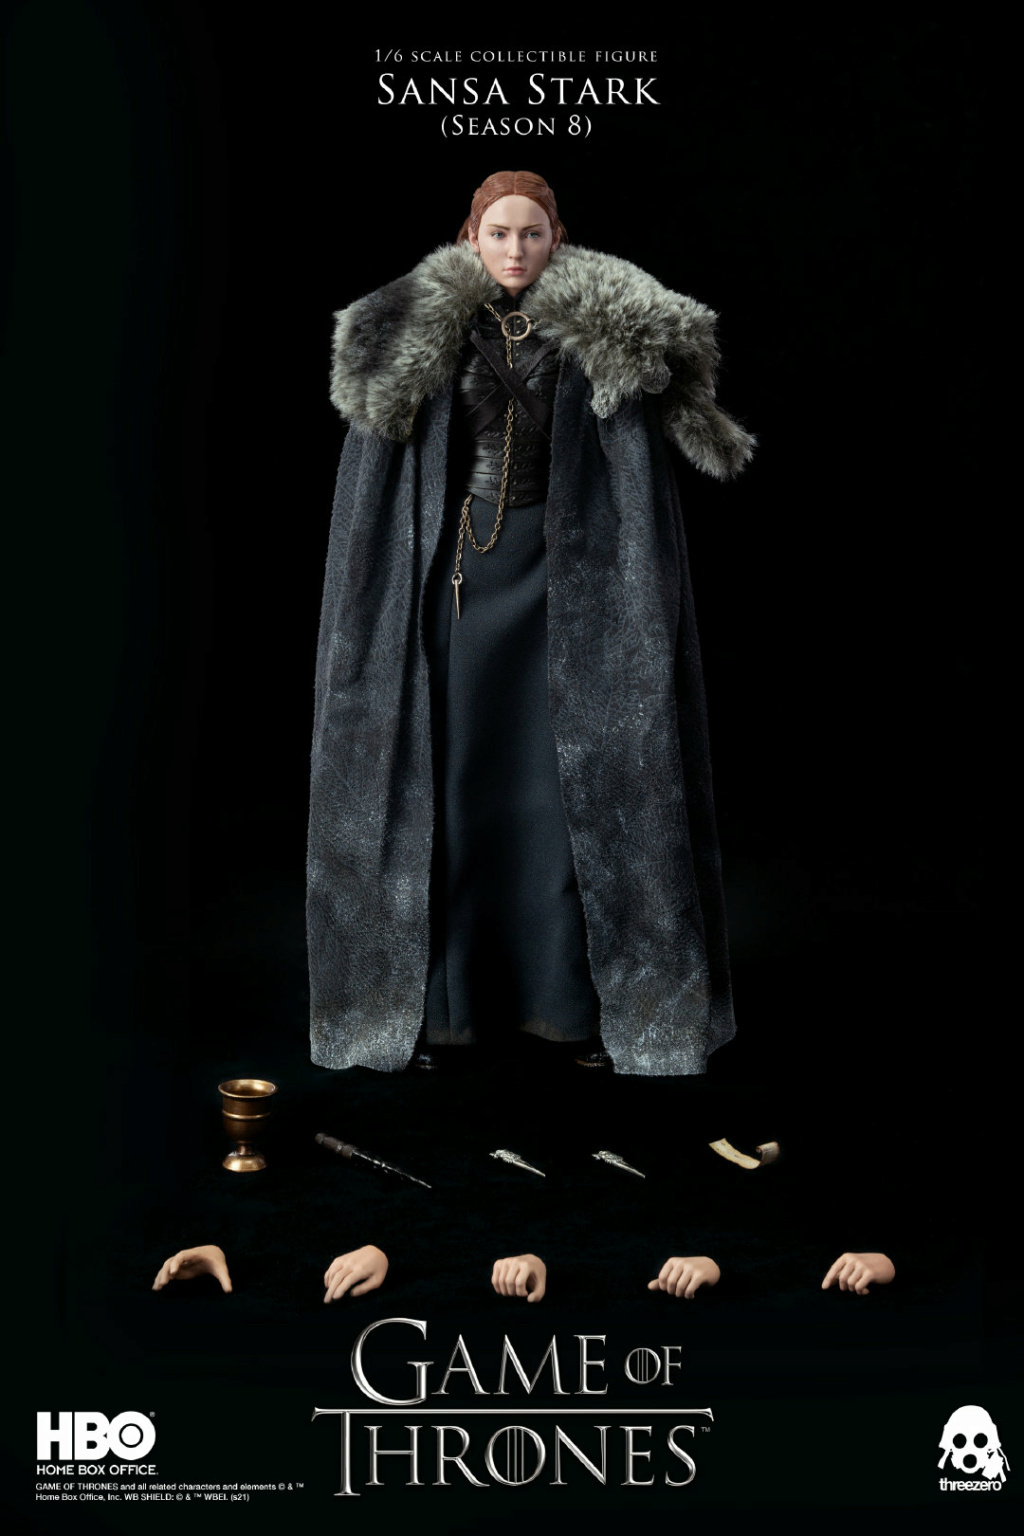 SansaStark - NEW PRODUCT: Threezero: 1/6 "A Song of Ice and Fire: Game of Thrones" Sansa Stark/Sansa Stark Action Figure 10184111